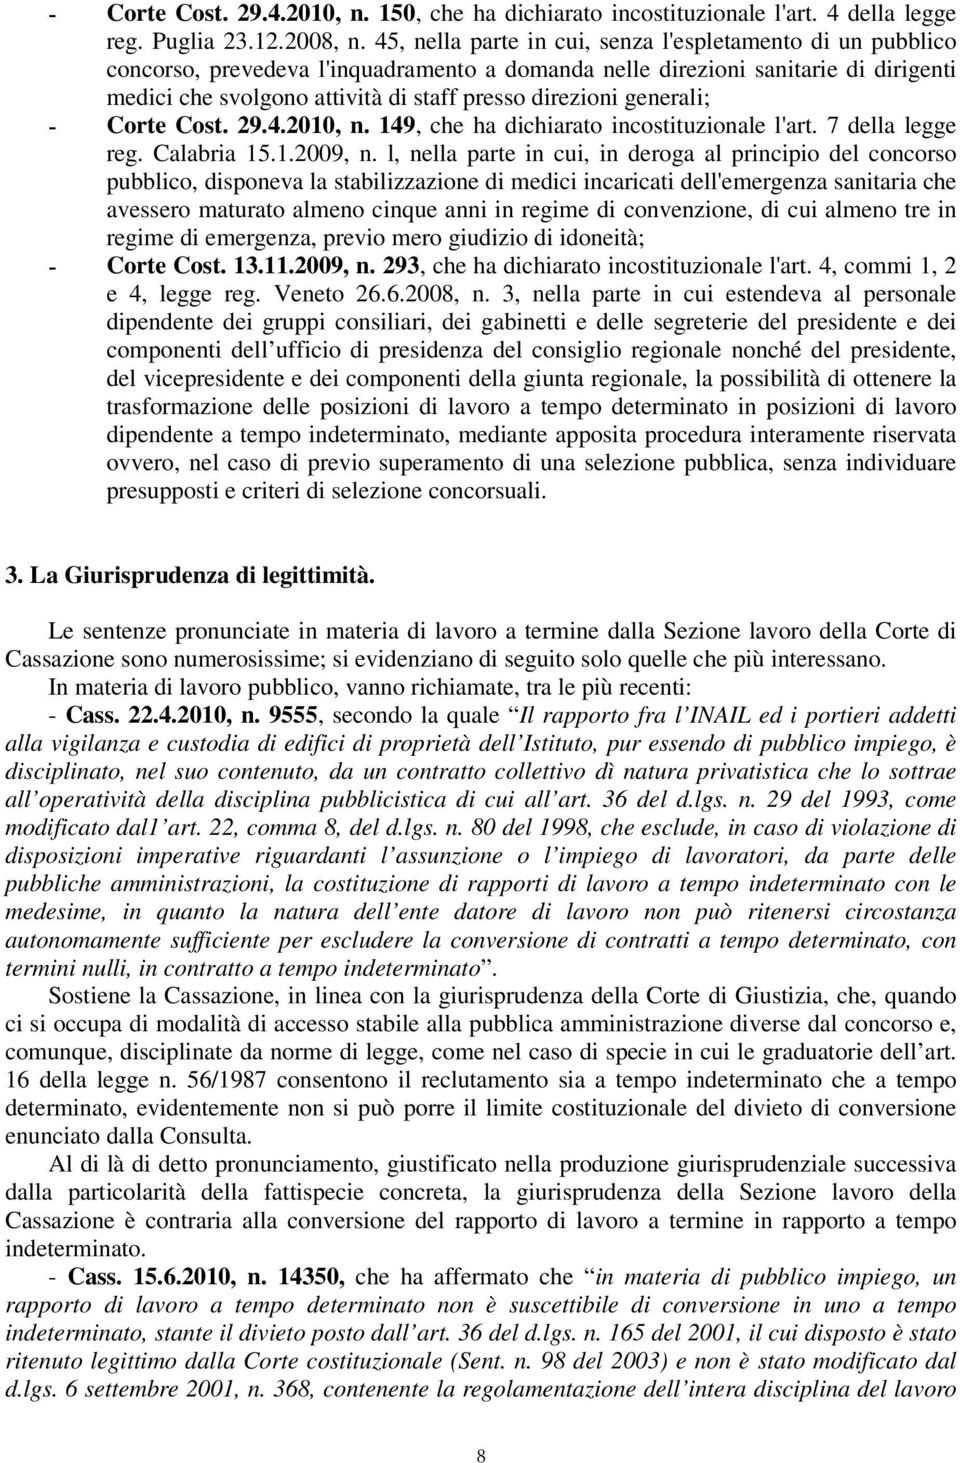 generali; - Corte Cost. 29.4.2010, n. 149, che ha dichiarato incostituzionale l'art. 7 della legge reg. Calabria 15.1.2009, n.